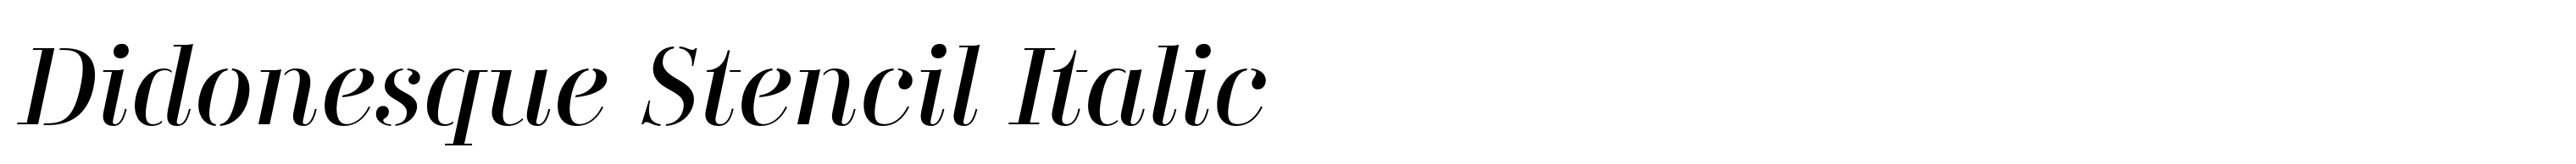 Didonesque Stencil Italic